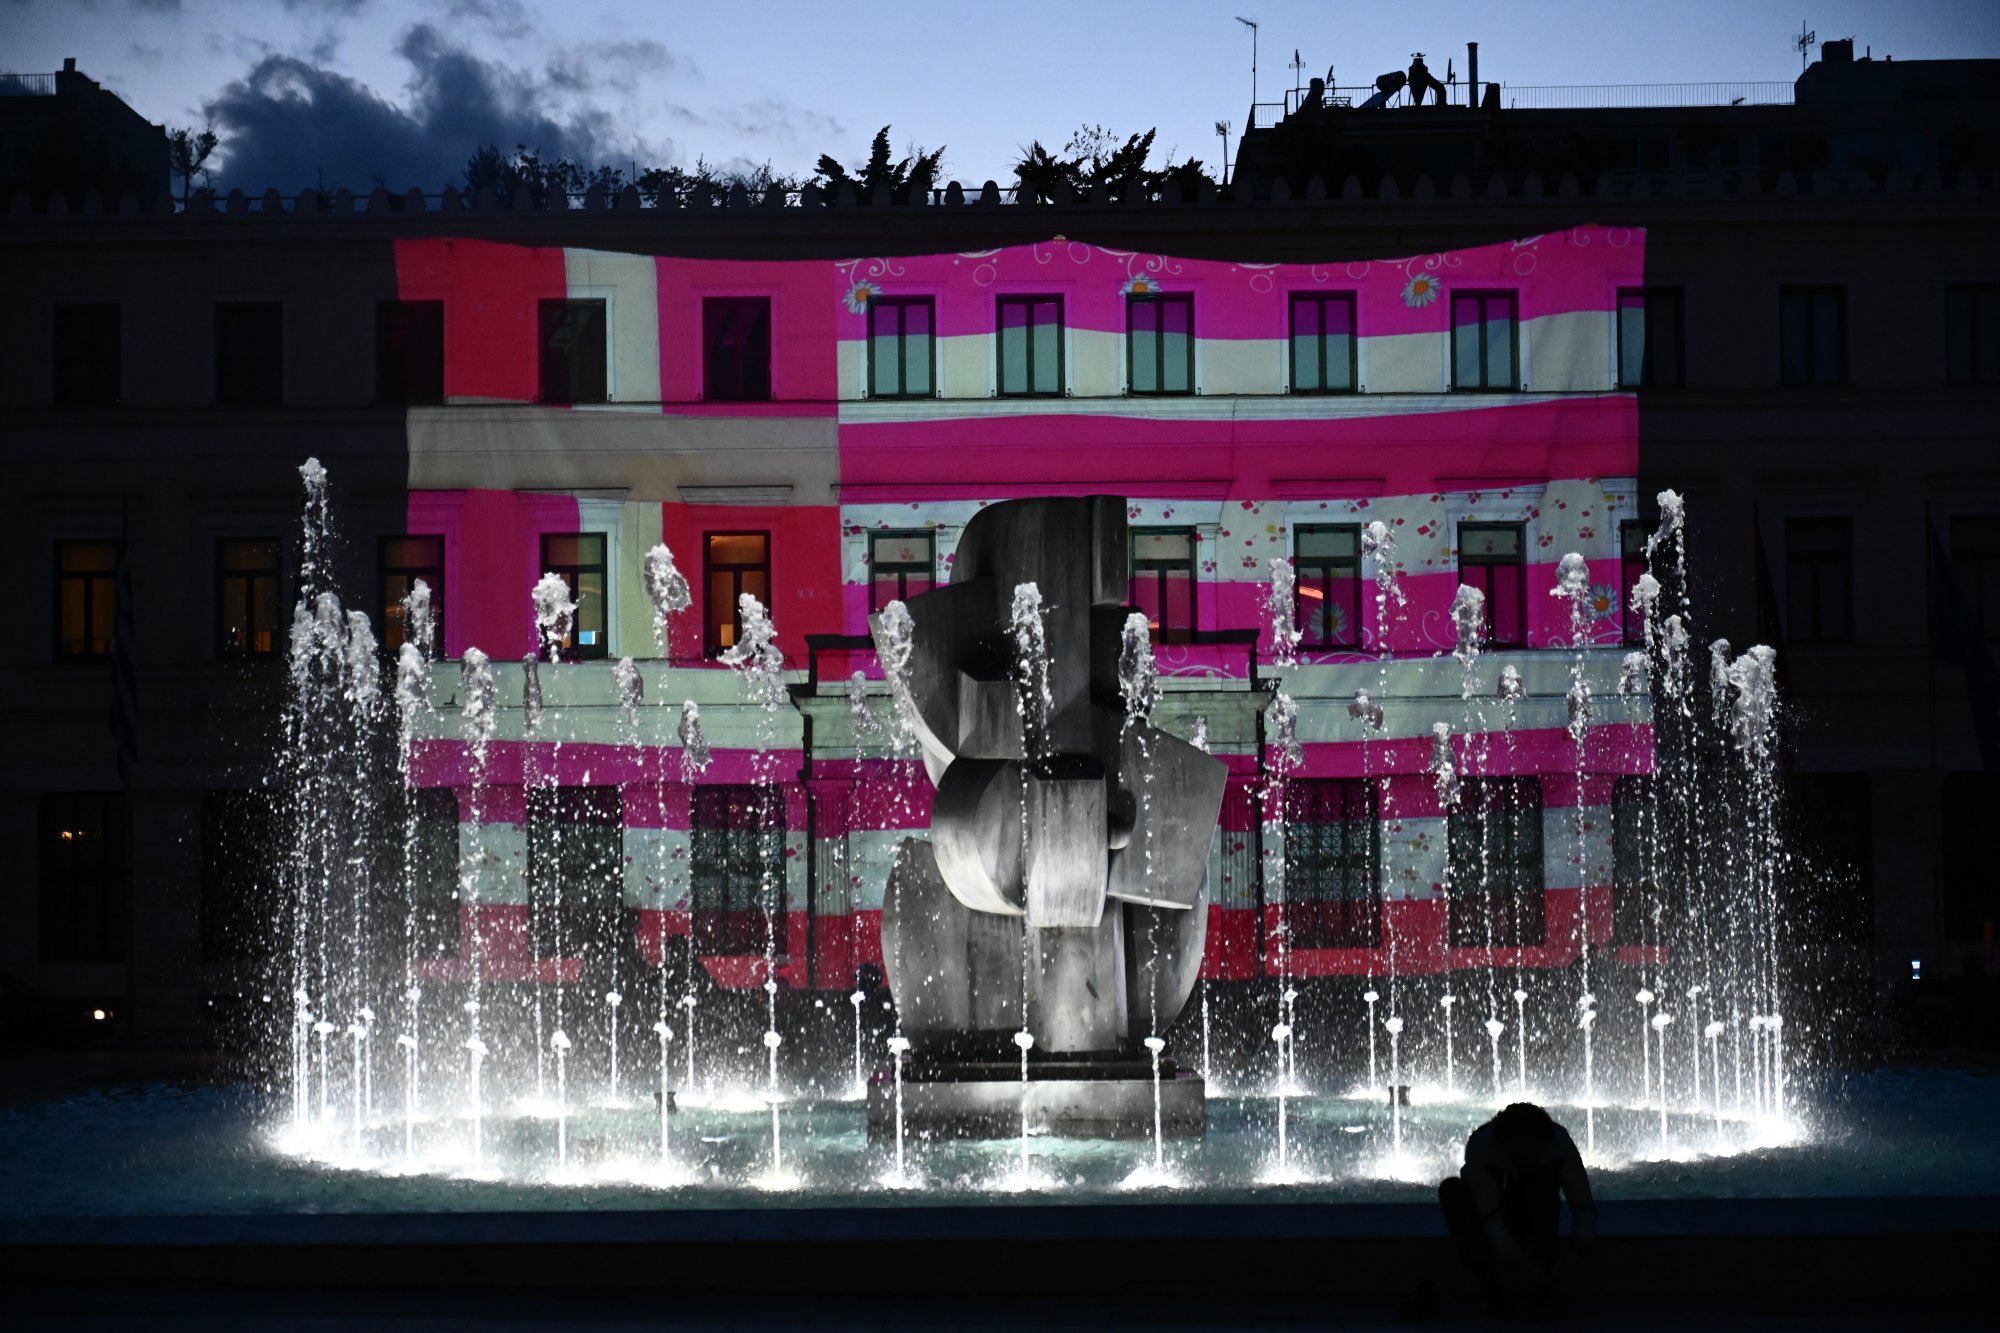 Ημέρα της Γυναίκας: Το δημαρχείο Αθηνών στα χρώματα της λογοκριμένης ροζ σημαίας